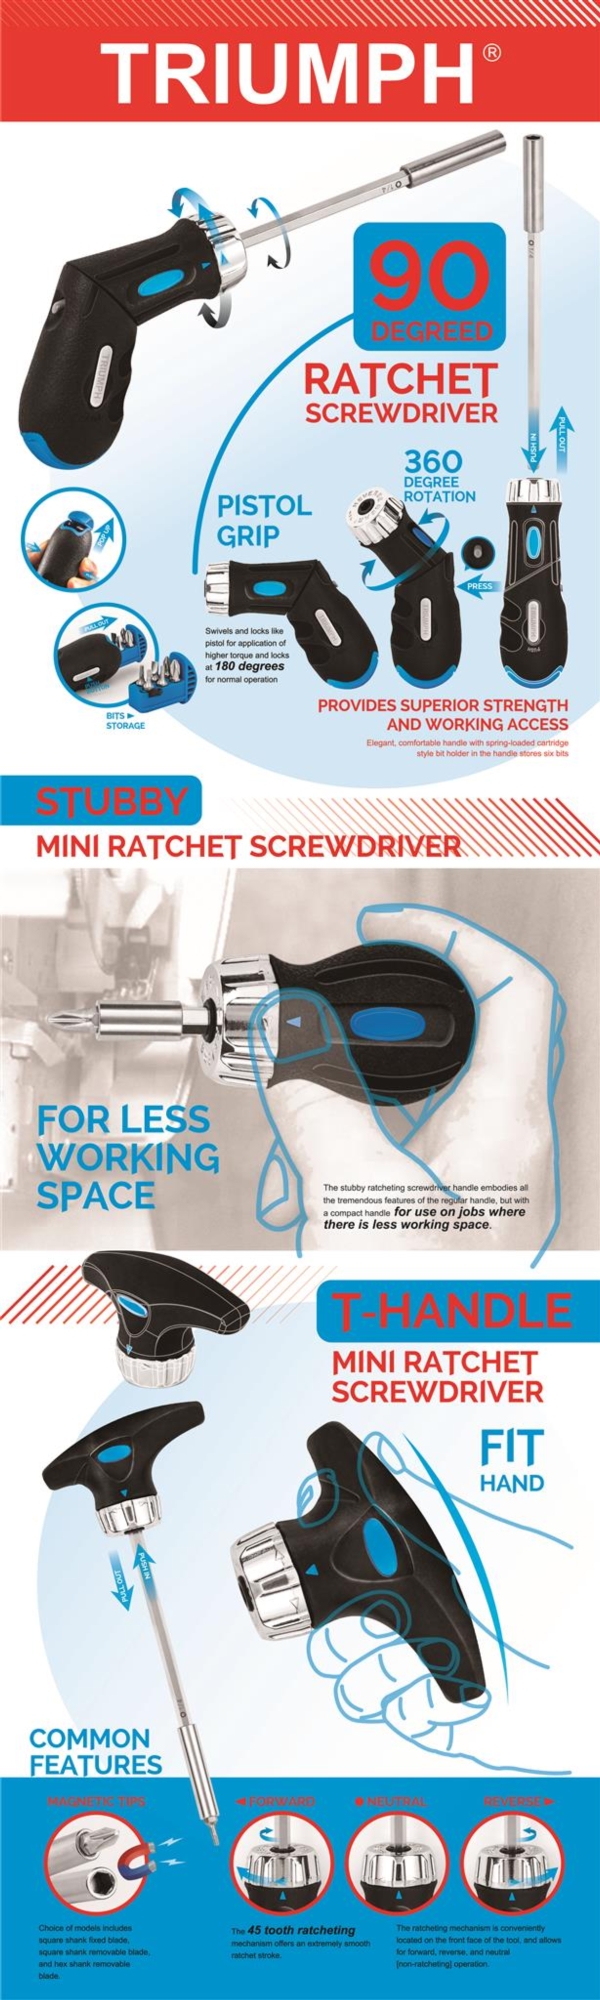 Ratchet Screwdriver